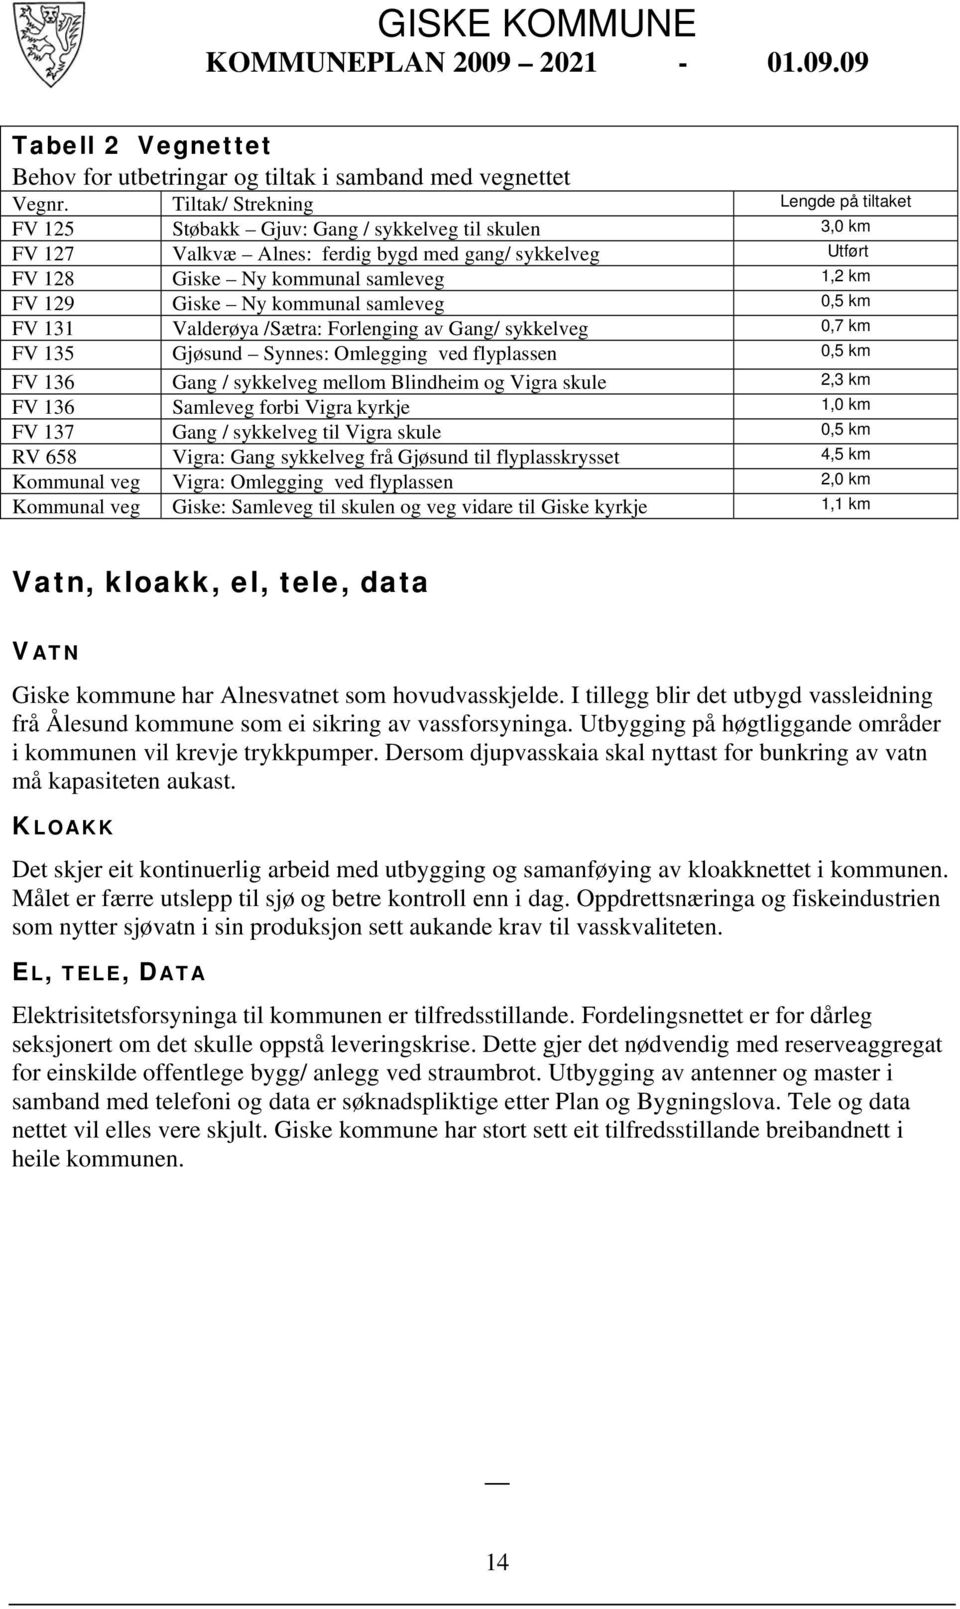 129 Giske Ny kommunal samleveg 0,5 km FV 131 Valderøya /Sætra: Forlenging av Gang/ sykkelveg 0,7 km FV 135 Gjøsund Synnes: Omlegging ved flyplassen 0,5 km FV 136 Gang / sykkelveg mellom Blindheim og